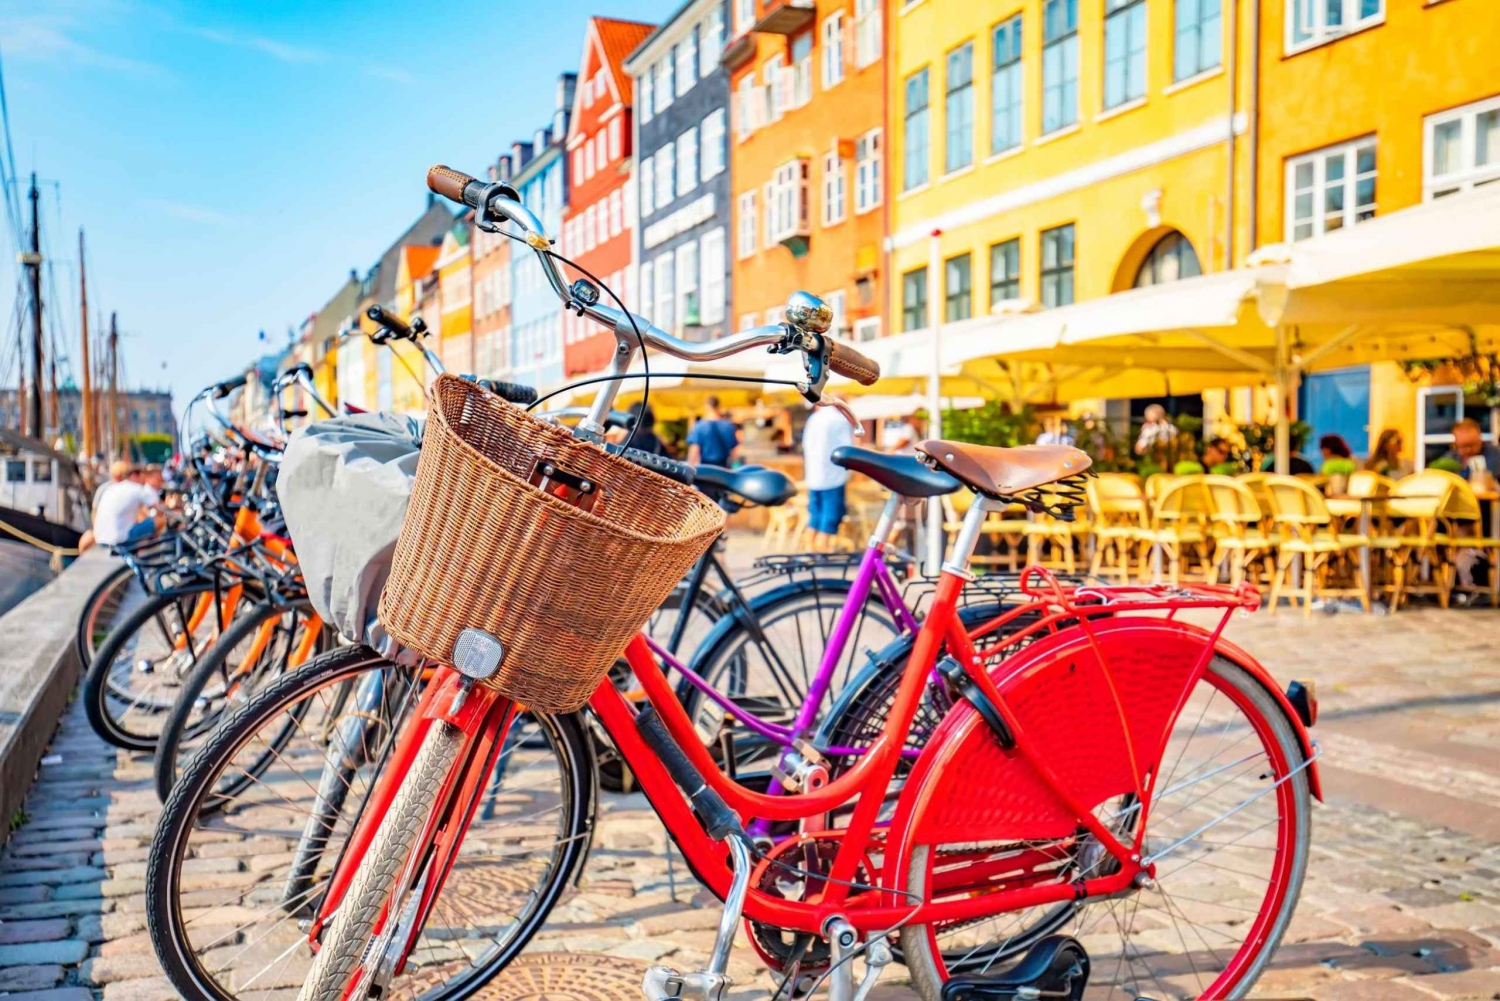 Grote fietstocht door de oude binnenstad, attracties, natuur van Kopenhagen